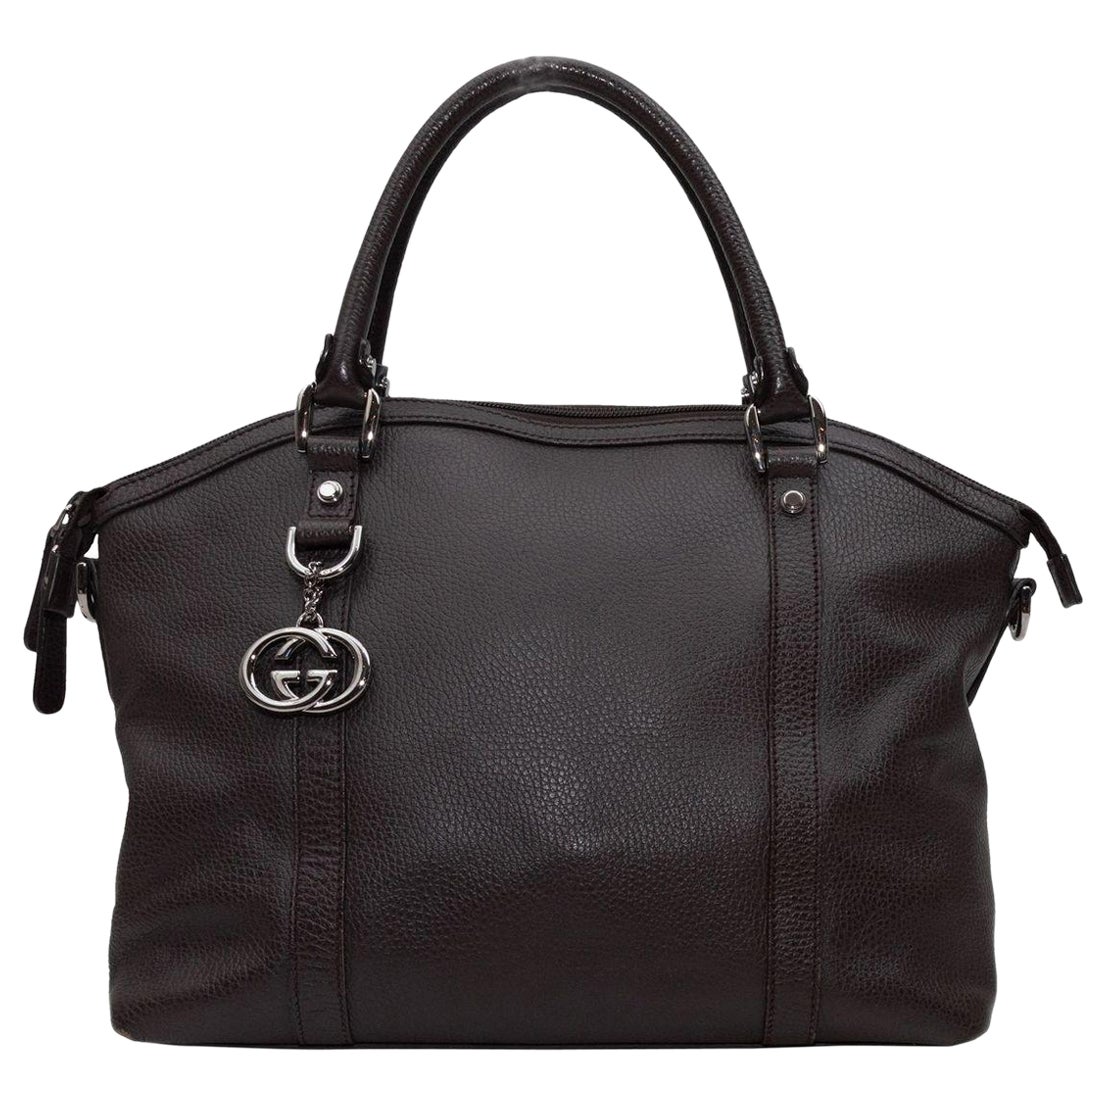 Gucci Dark Brown Top Handle Tote Bag